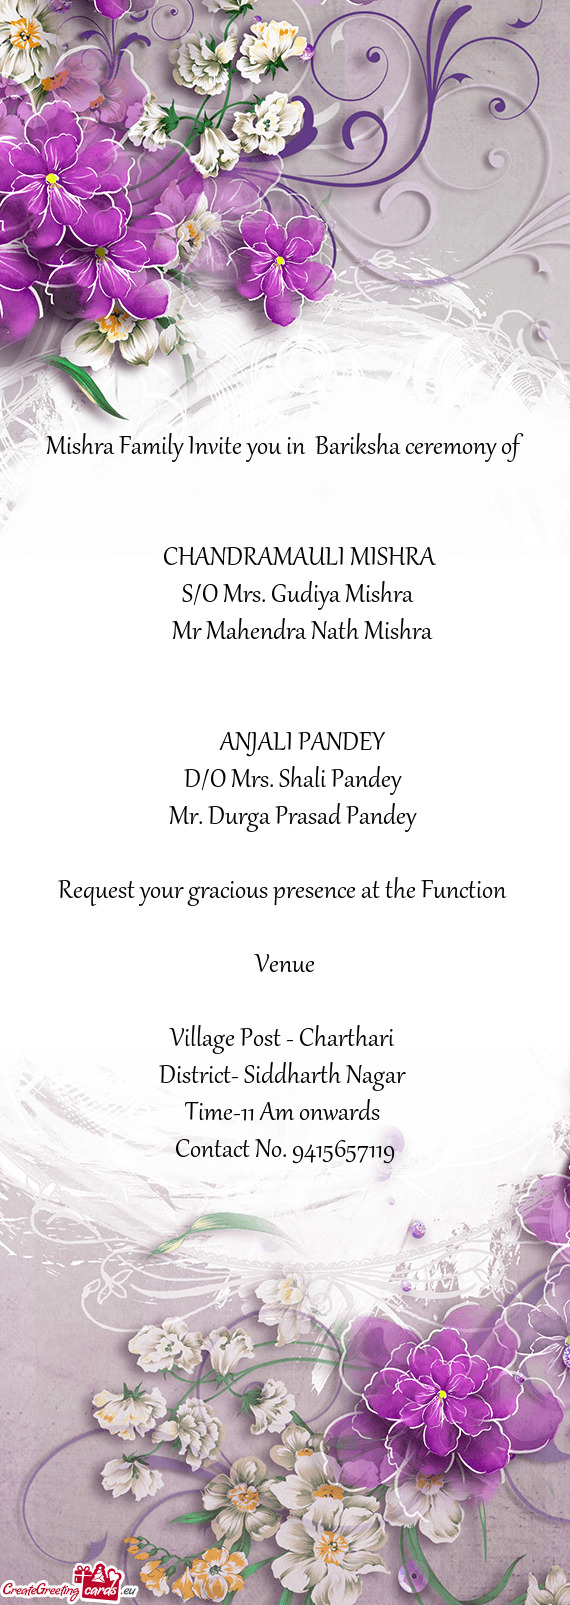 Mishra Family Invite you in Bariksha ceremony of